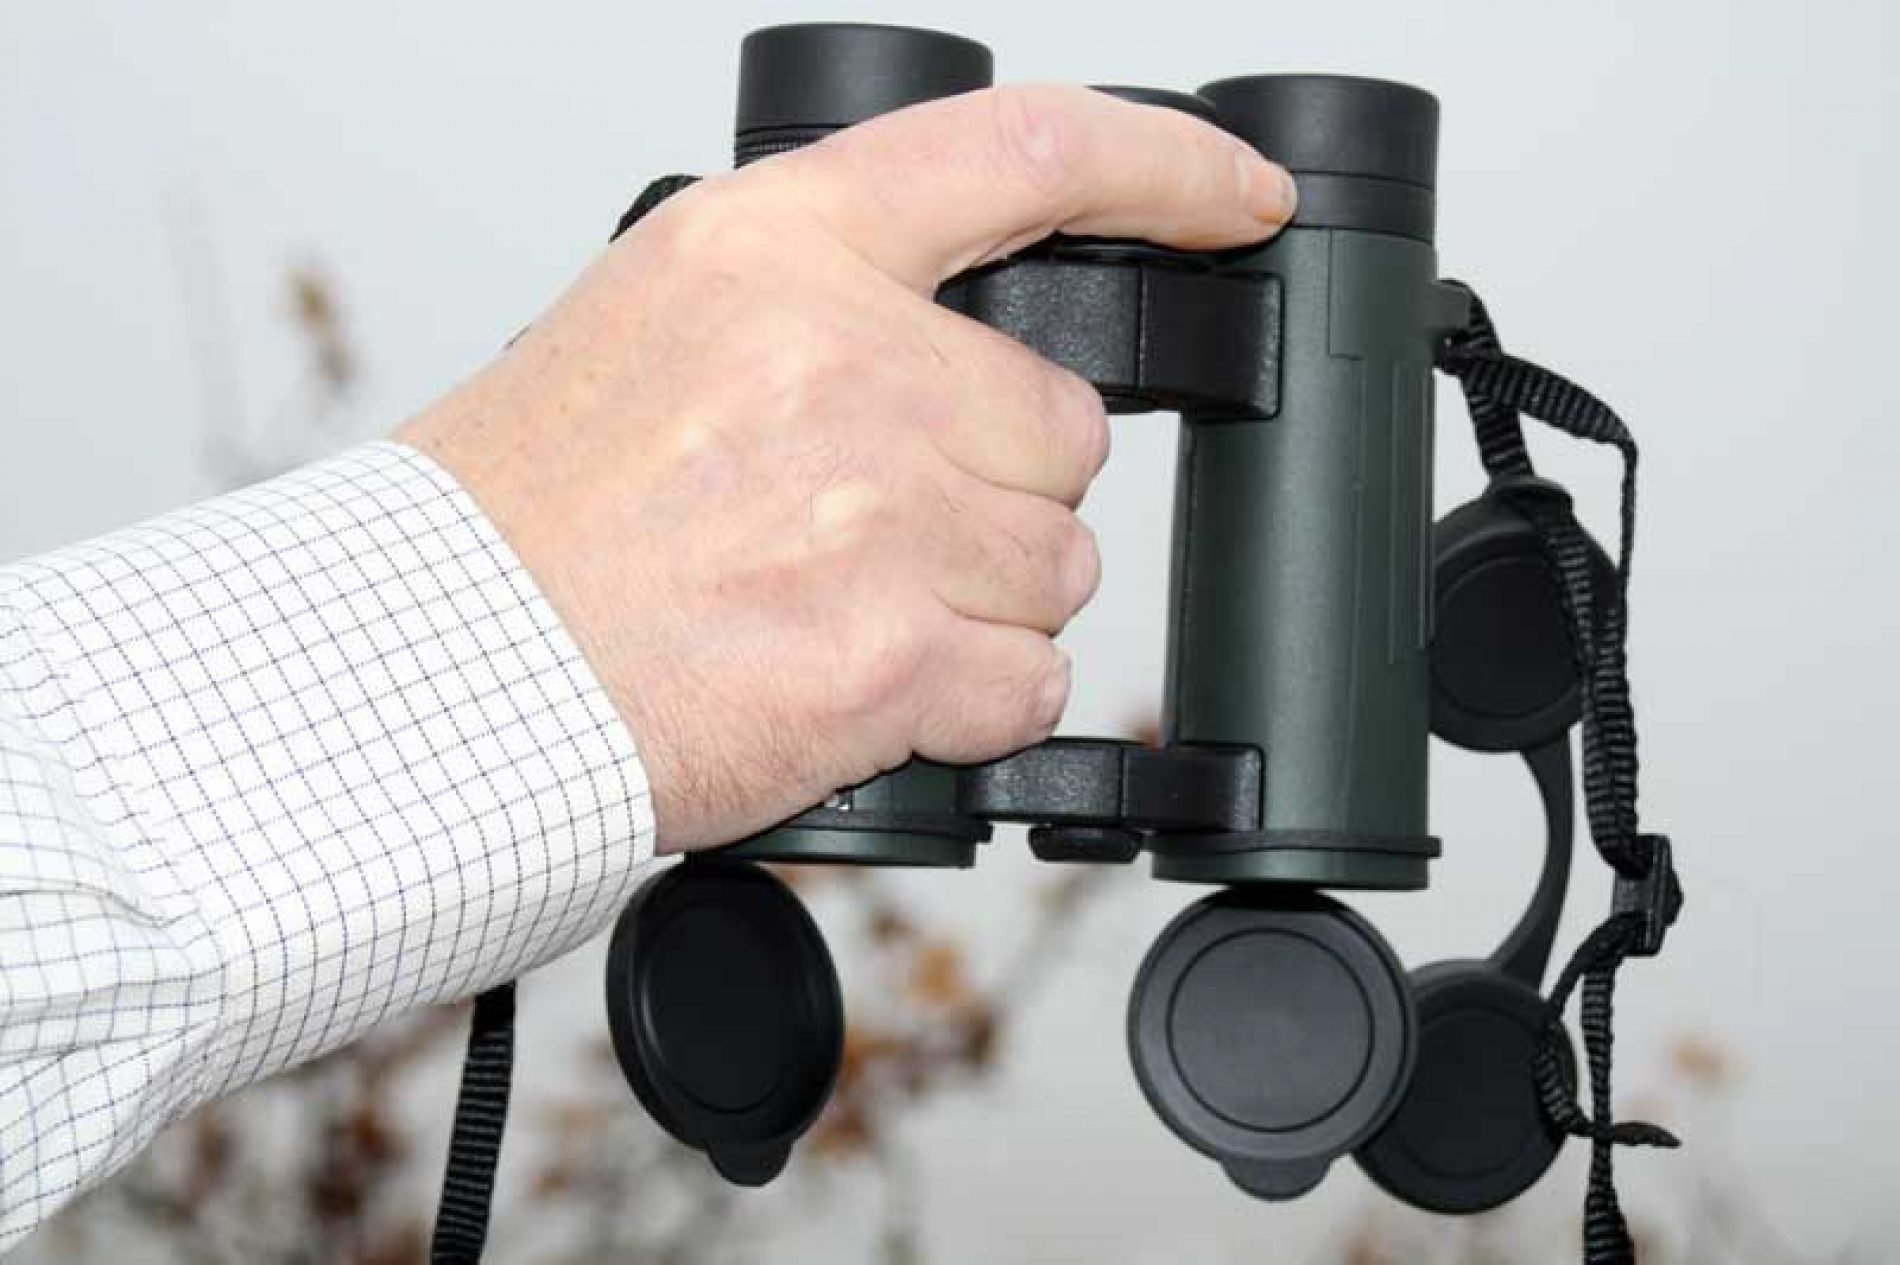 Probamos los nuevos binoculares Shilba Odyssey, más ergonómicos y compactos